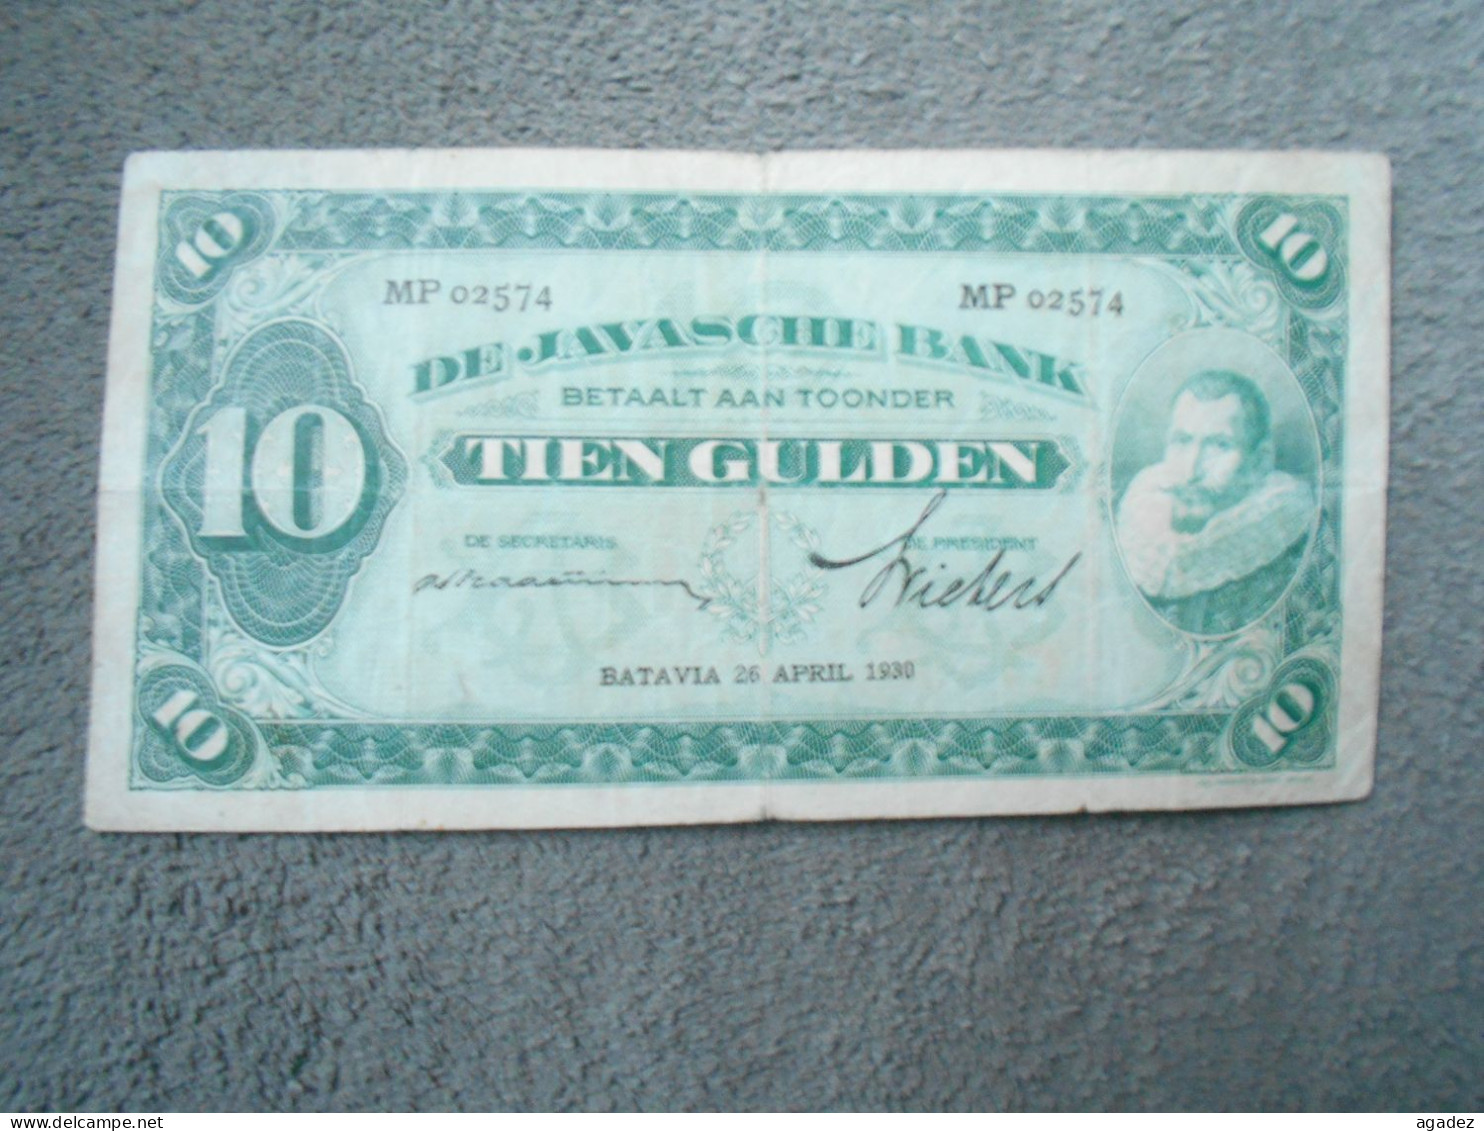 Ancien Billet De Banque Java De Javasche Bank 10 Gulden 1930 - Other - Asia